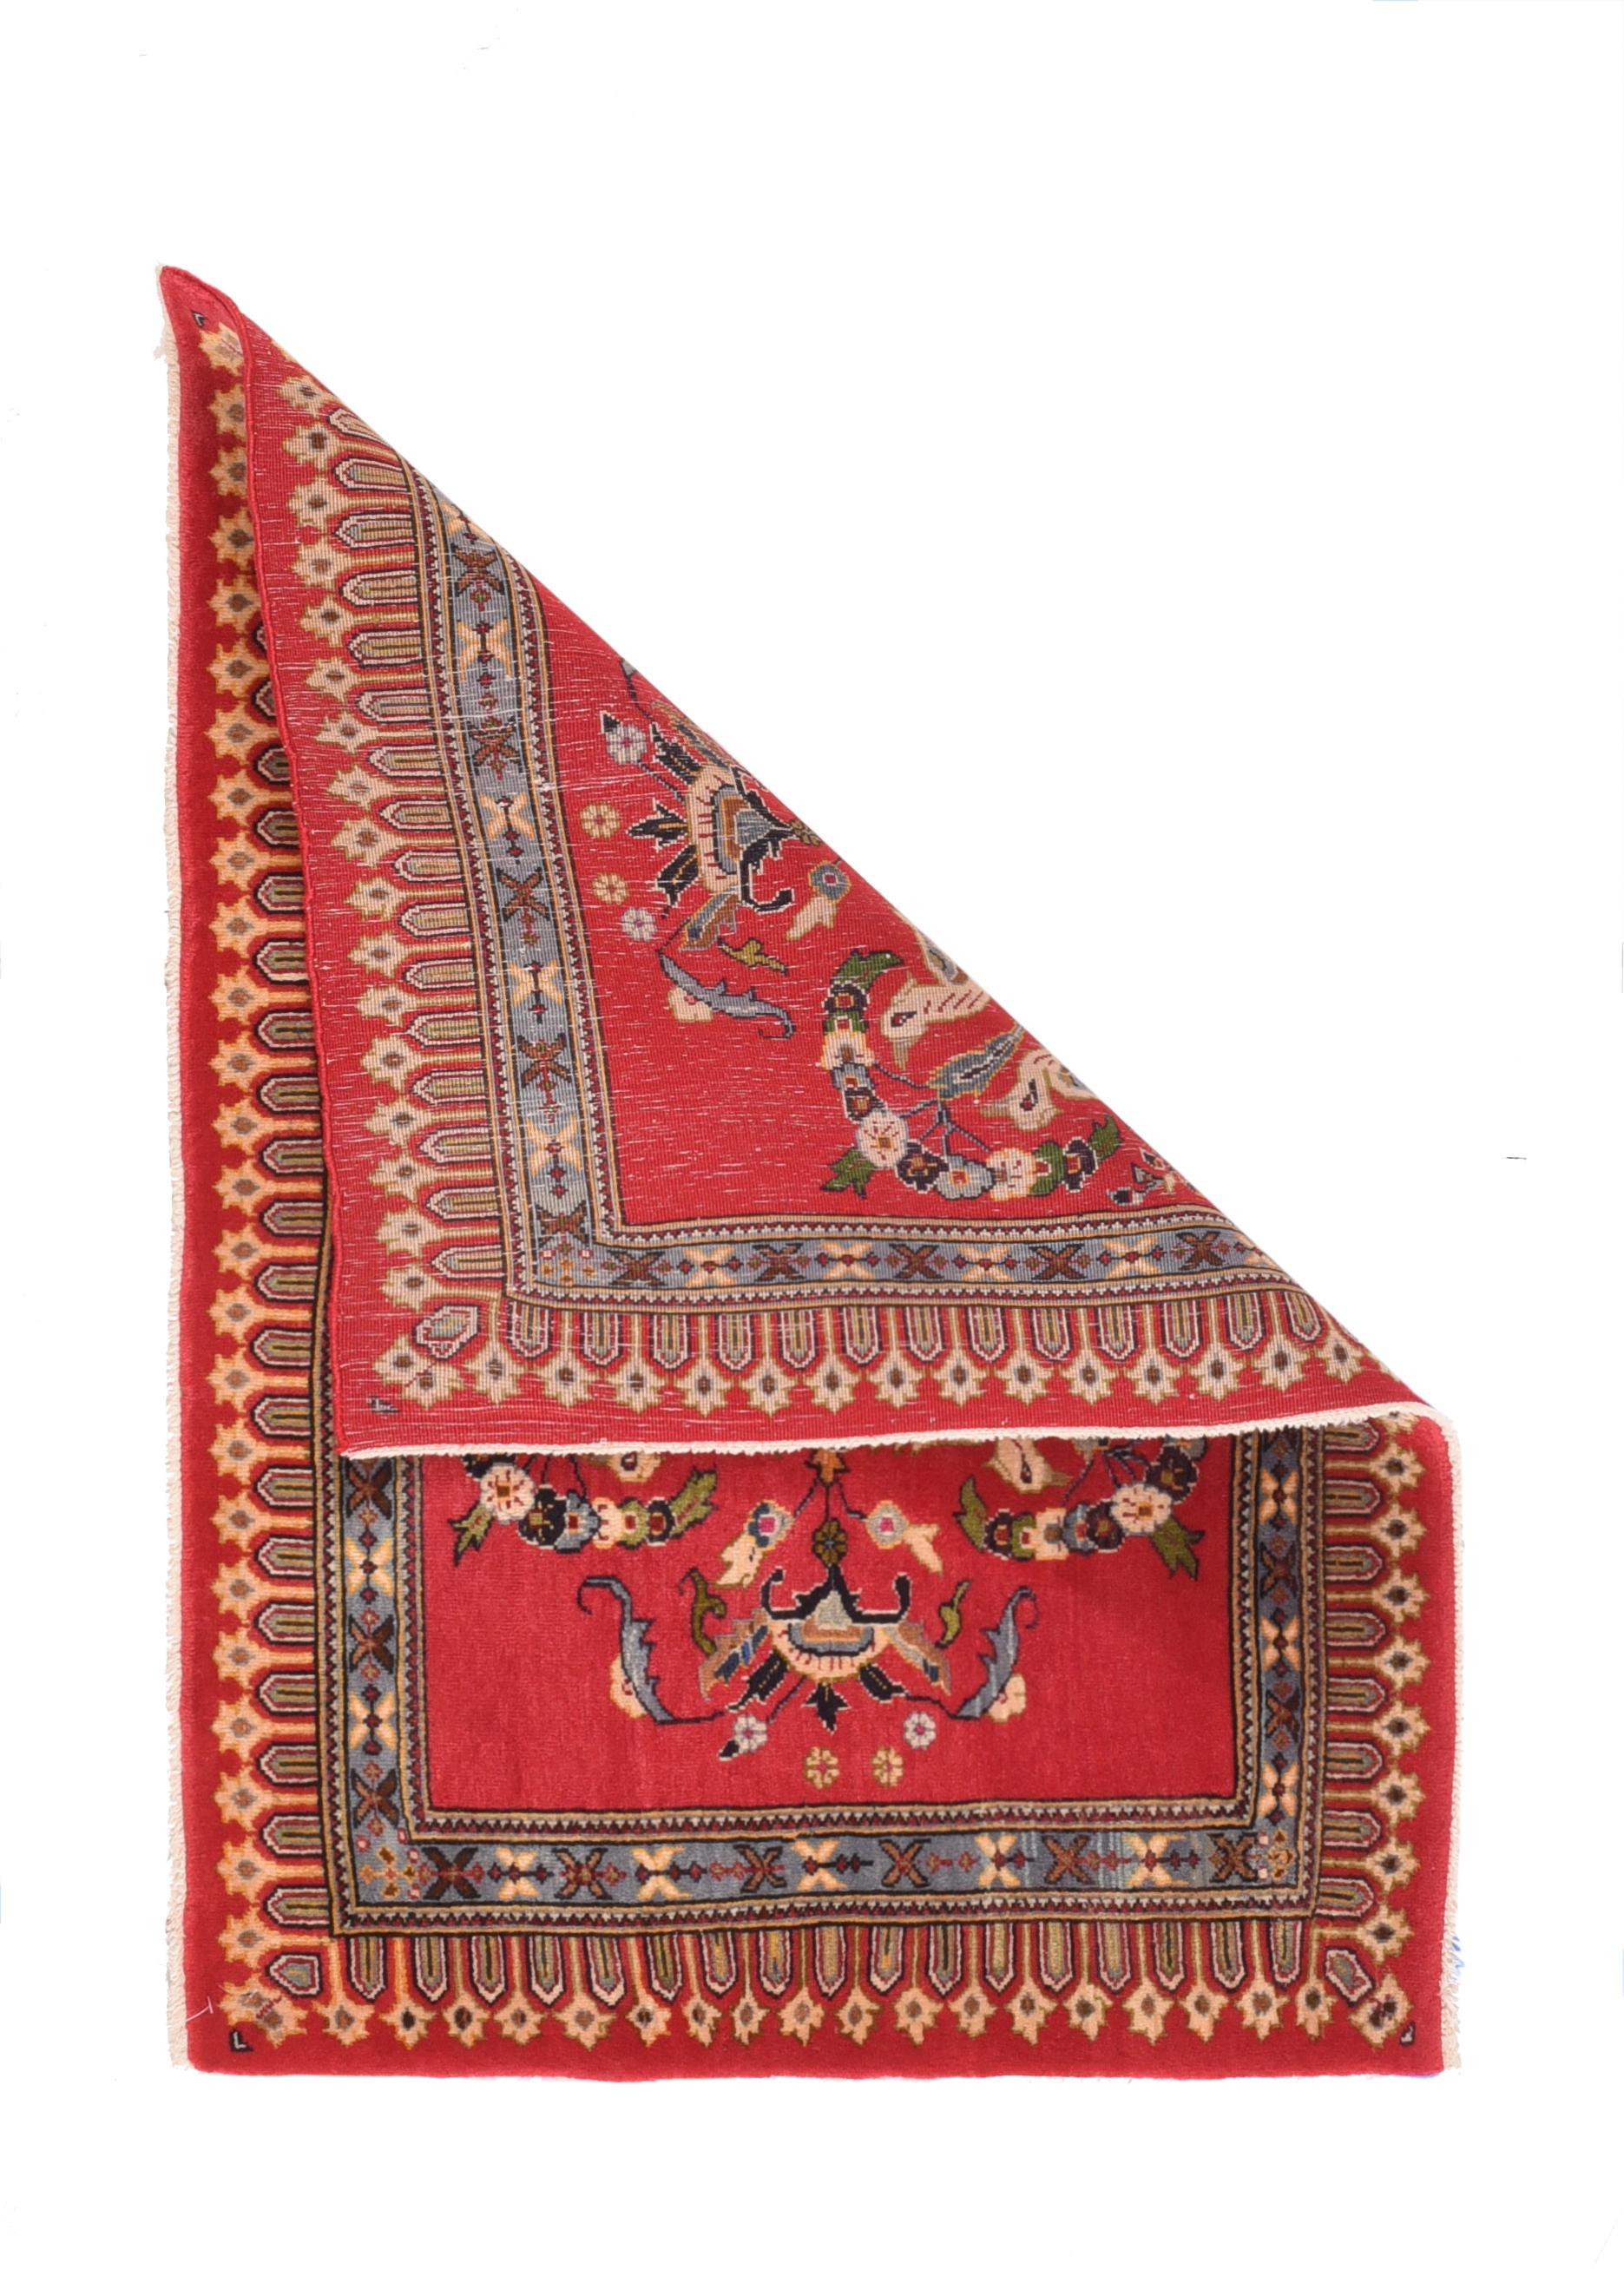 Vintage Persisch Kashan Teppich 2'2'' x 3'. Dies ist das Paar zu unserer Nr. 1080. Das rubinrote Feld zeigt acht ecrufarbene Vögel, die paarweise um ein hellblaues, unregelmäßig zugespitztes Oktogramm-Medaillon gruppiert sind, mit Blütentrauben an